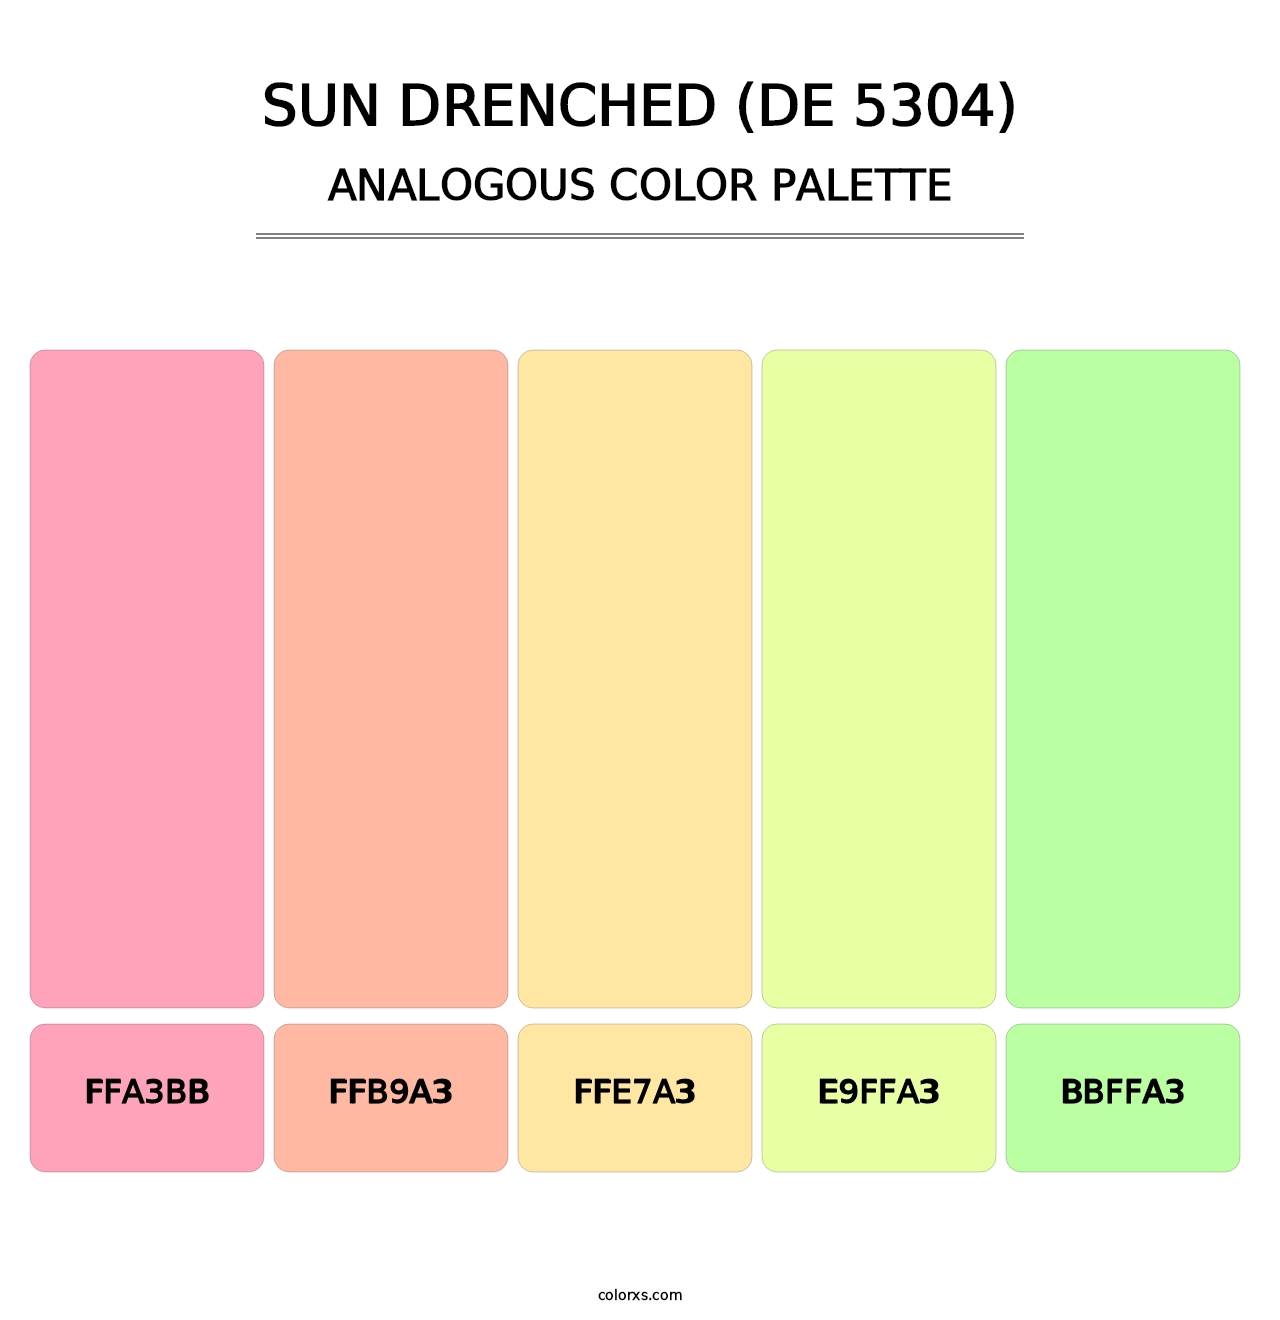 Sun Drenched (DE 5304) - Analogous Color Palette